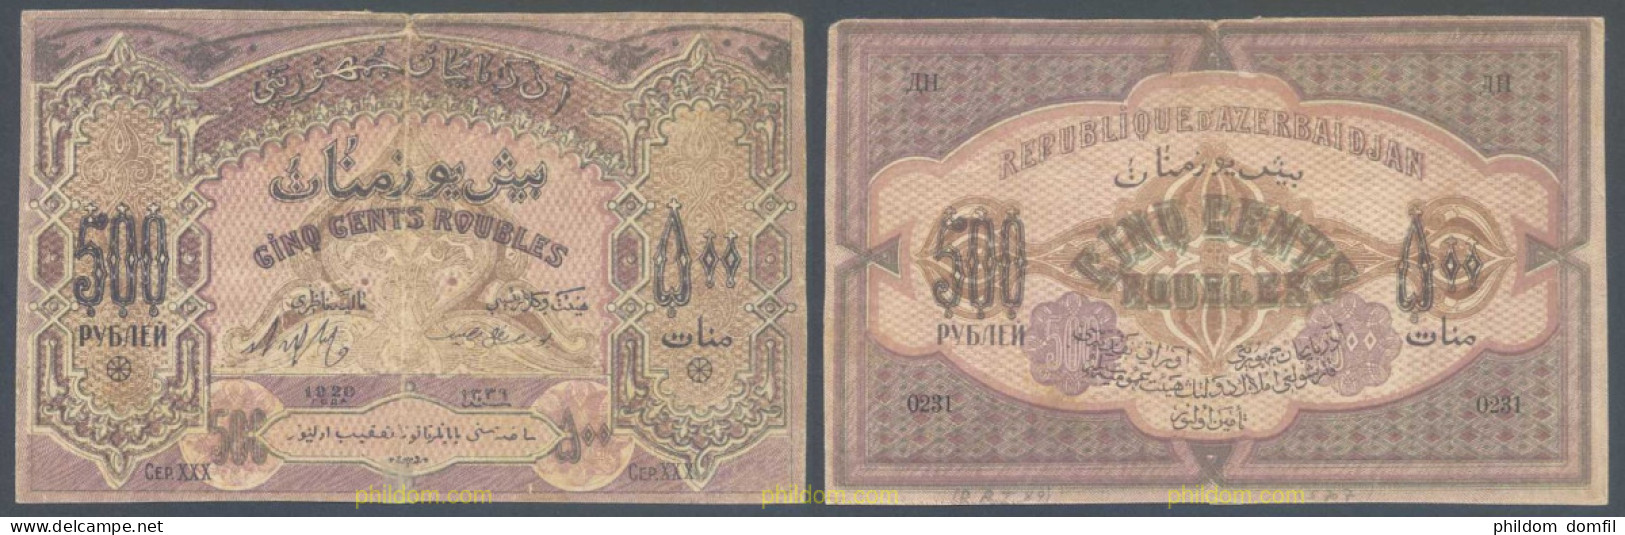 7801 AZERBAIYAN 1920 RUSSIA AZERBAIJAN 500 RUBLES 1920 - Aserbaidschan